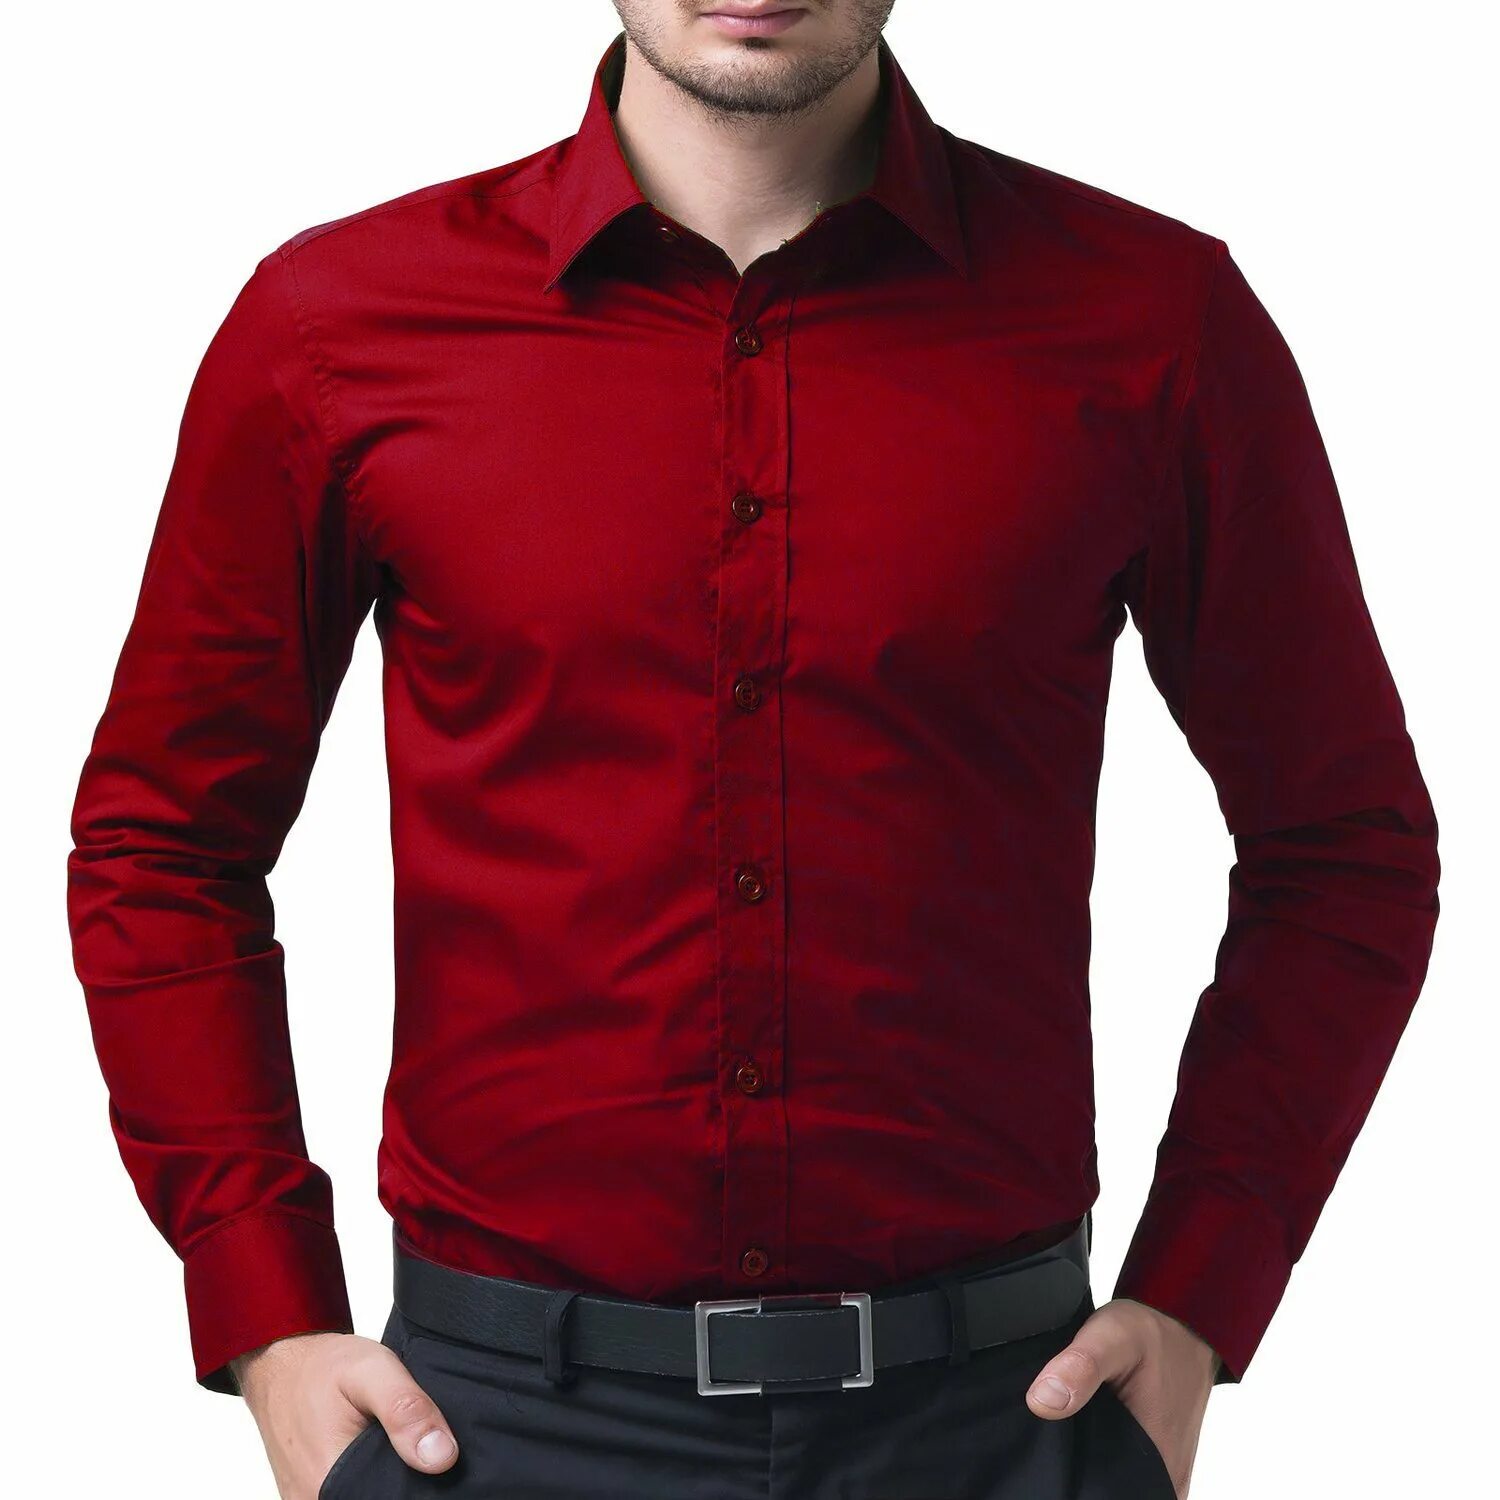 Красная рубашка текст. Красная одежда мужская. Рубашка Red. Багровая мужская рубашка. Мужчина в малиновой рубашке.